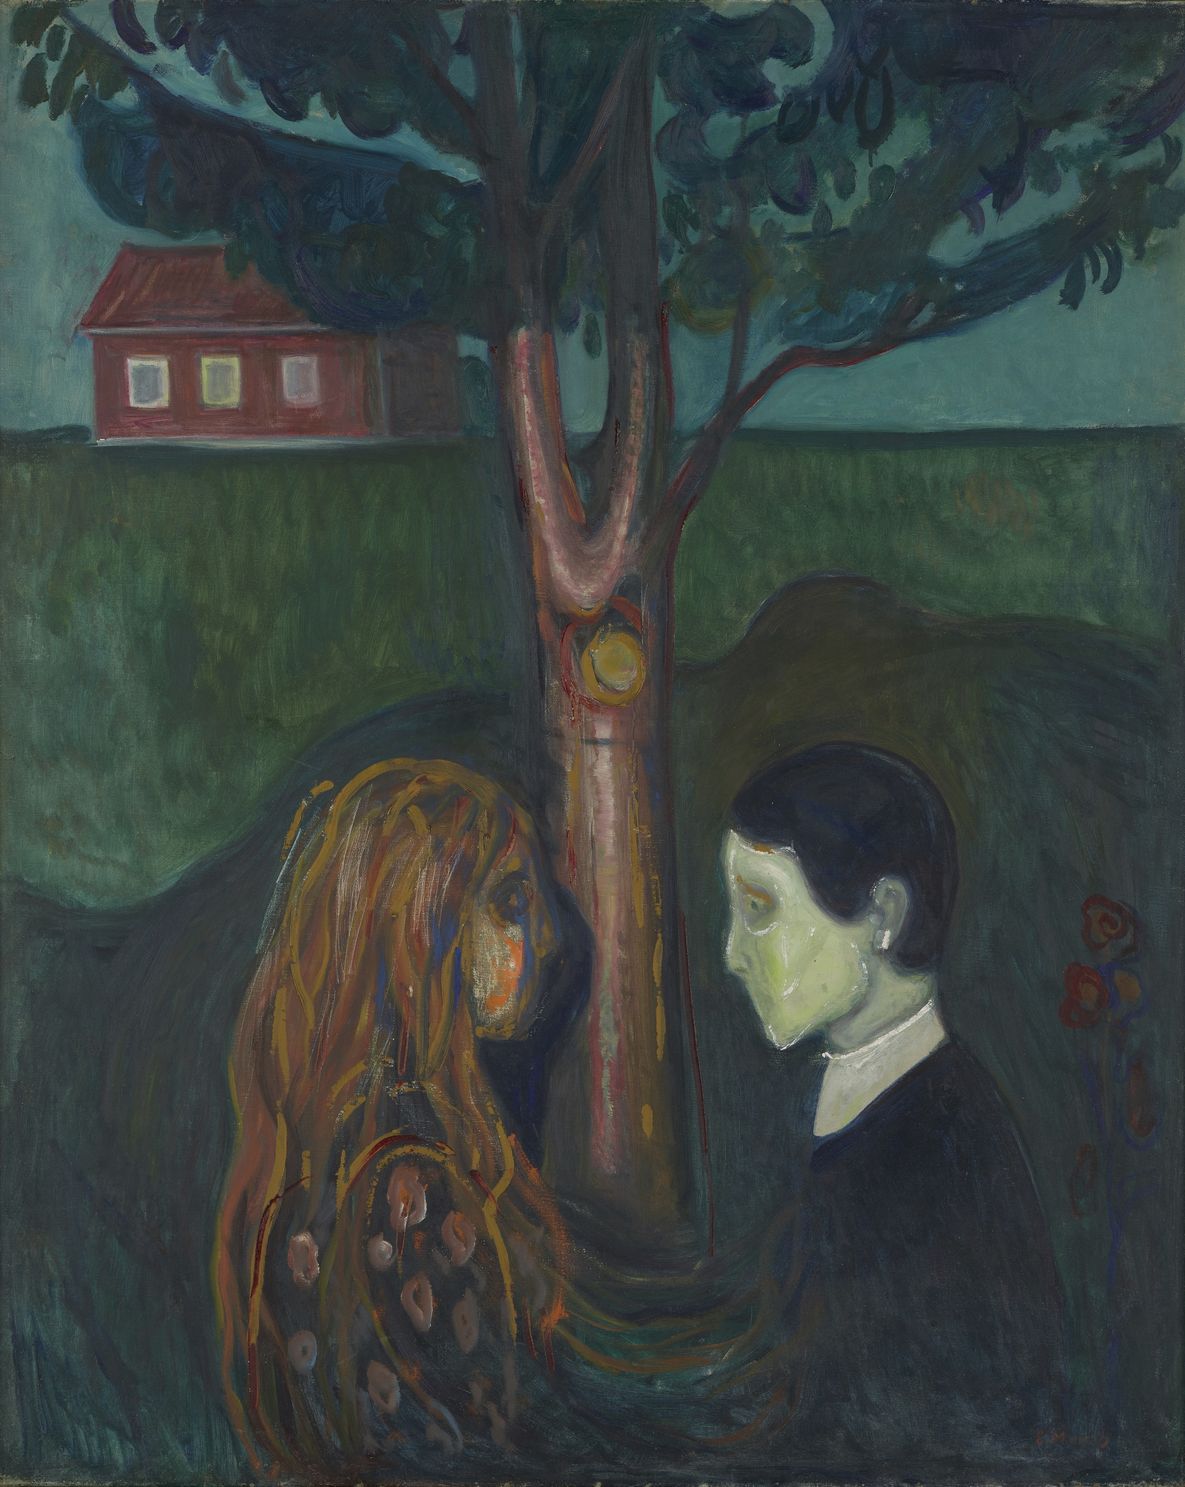 Gemälde: Seitenansicht von zwei Personen, die sich gegenüberstehen und einander in die Augen sehen. Im Hintergrund ist ein hoher Baum zu sehen, der ein dahinter stehendes rotes Haus teilweise verdeckt.